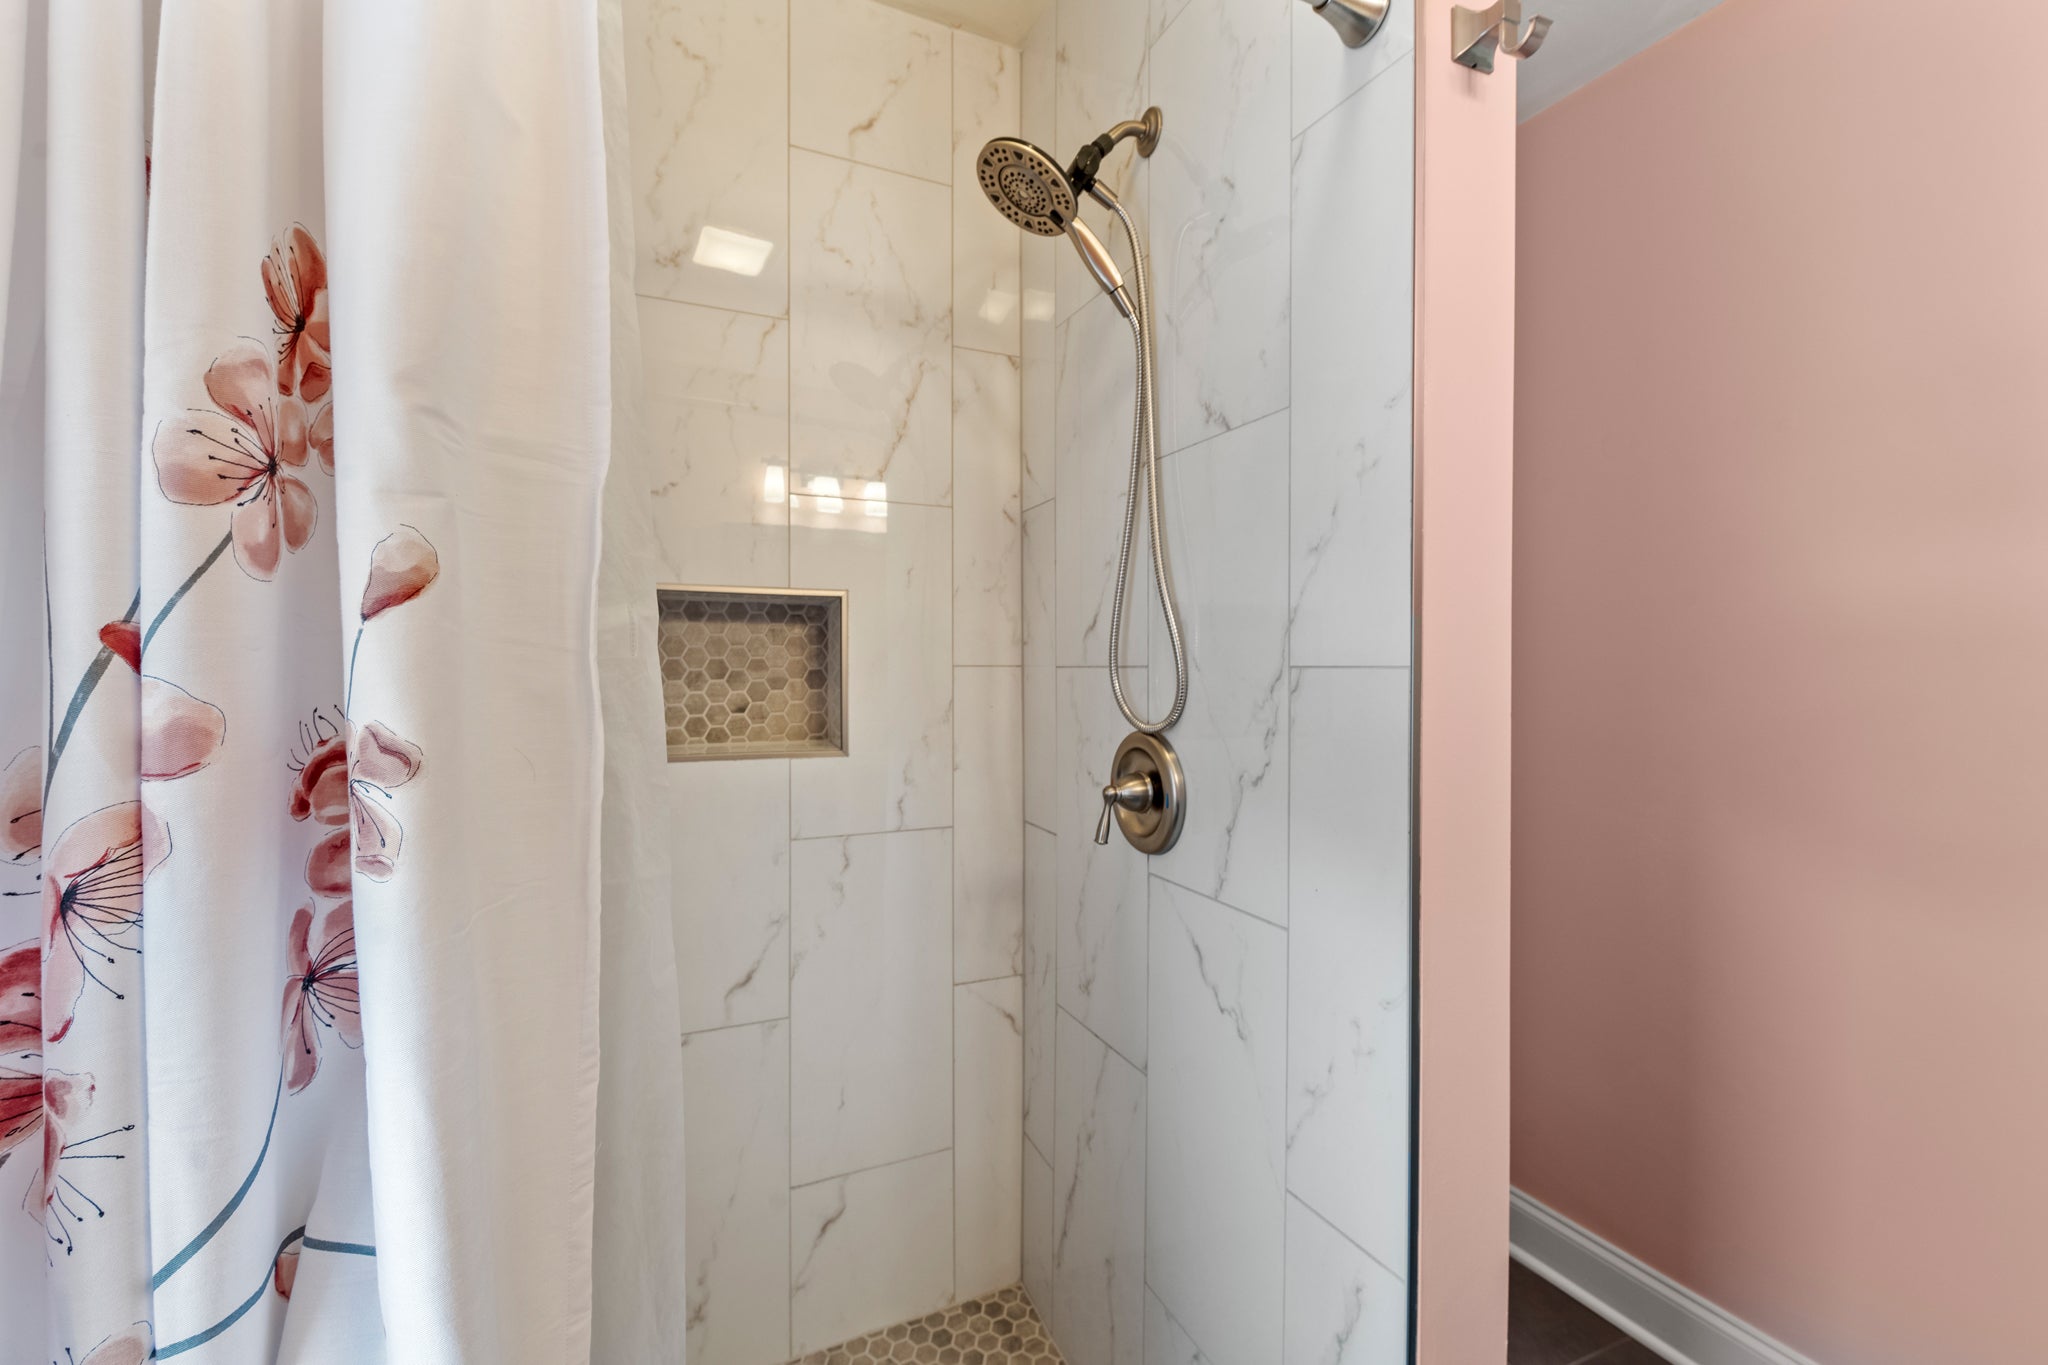 WH415: O'Shinn View | Top Level Bedroom 6 Semi-Private Bath